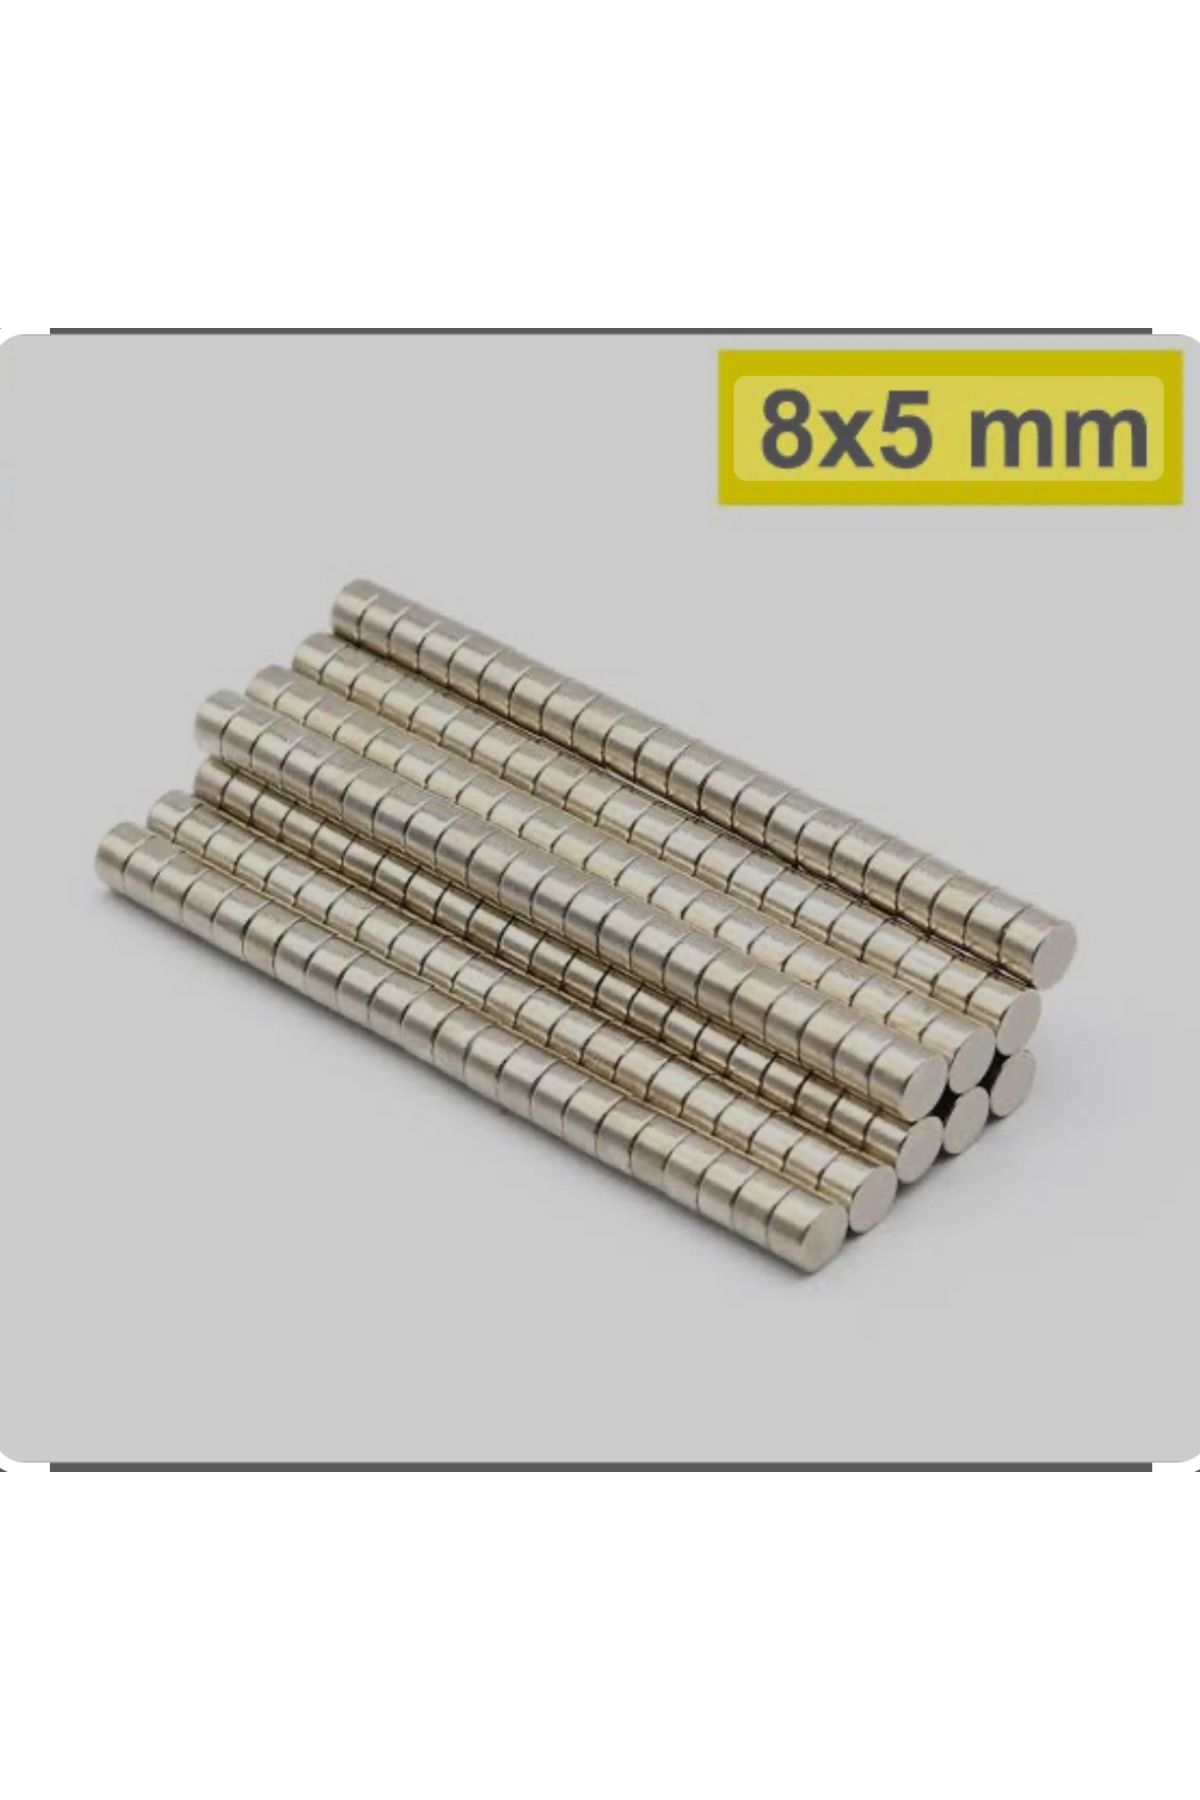 magnet market 250 Adet 8x5 Güçlü Neodyum Mıknatıs | Çap 8mm X Kalınlık 5mm Neodyum Mıknatıs